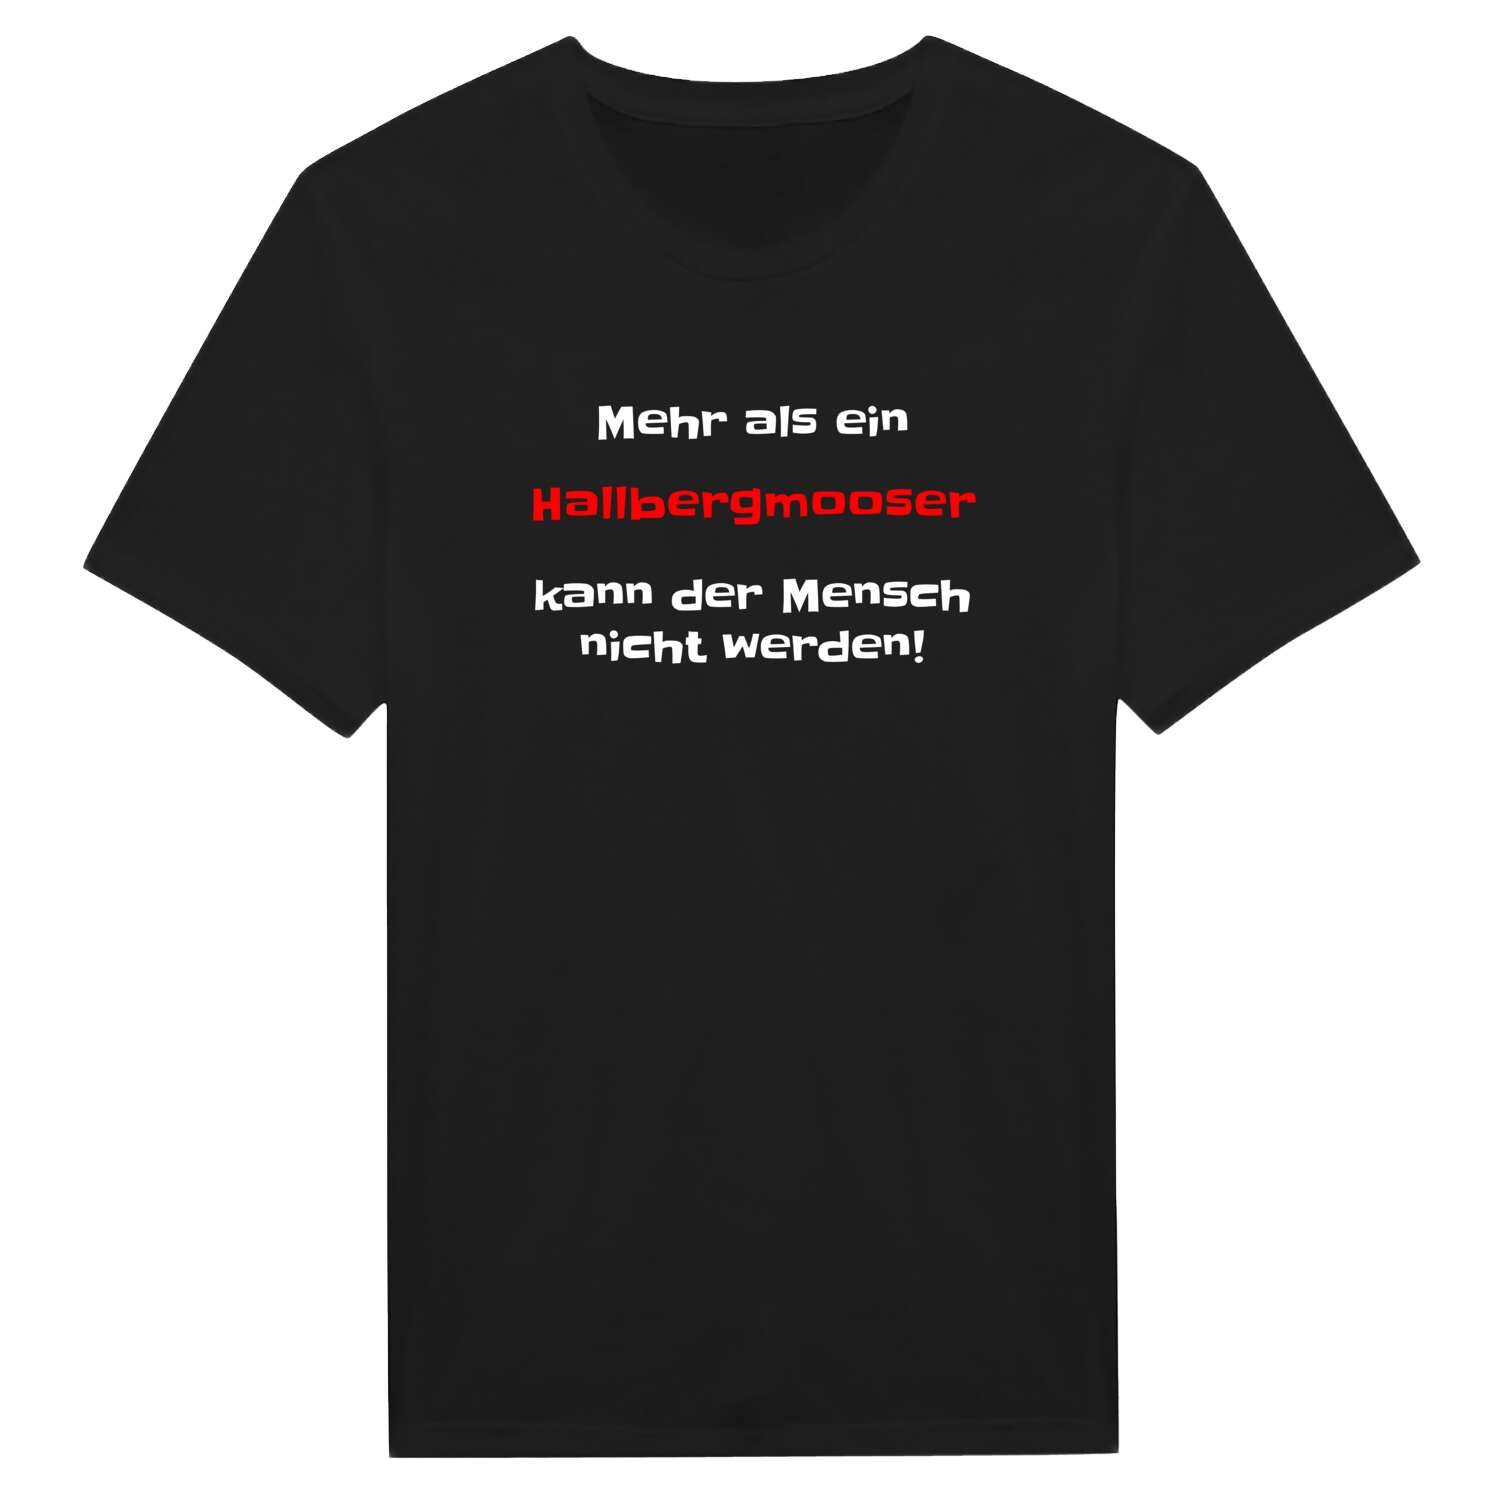 Hallbergmoos T-Shirt »Mehr als ein«